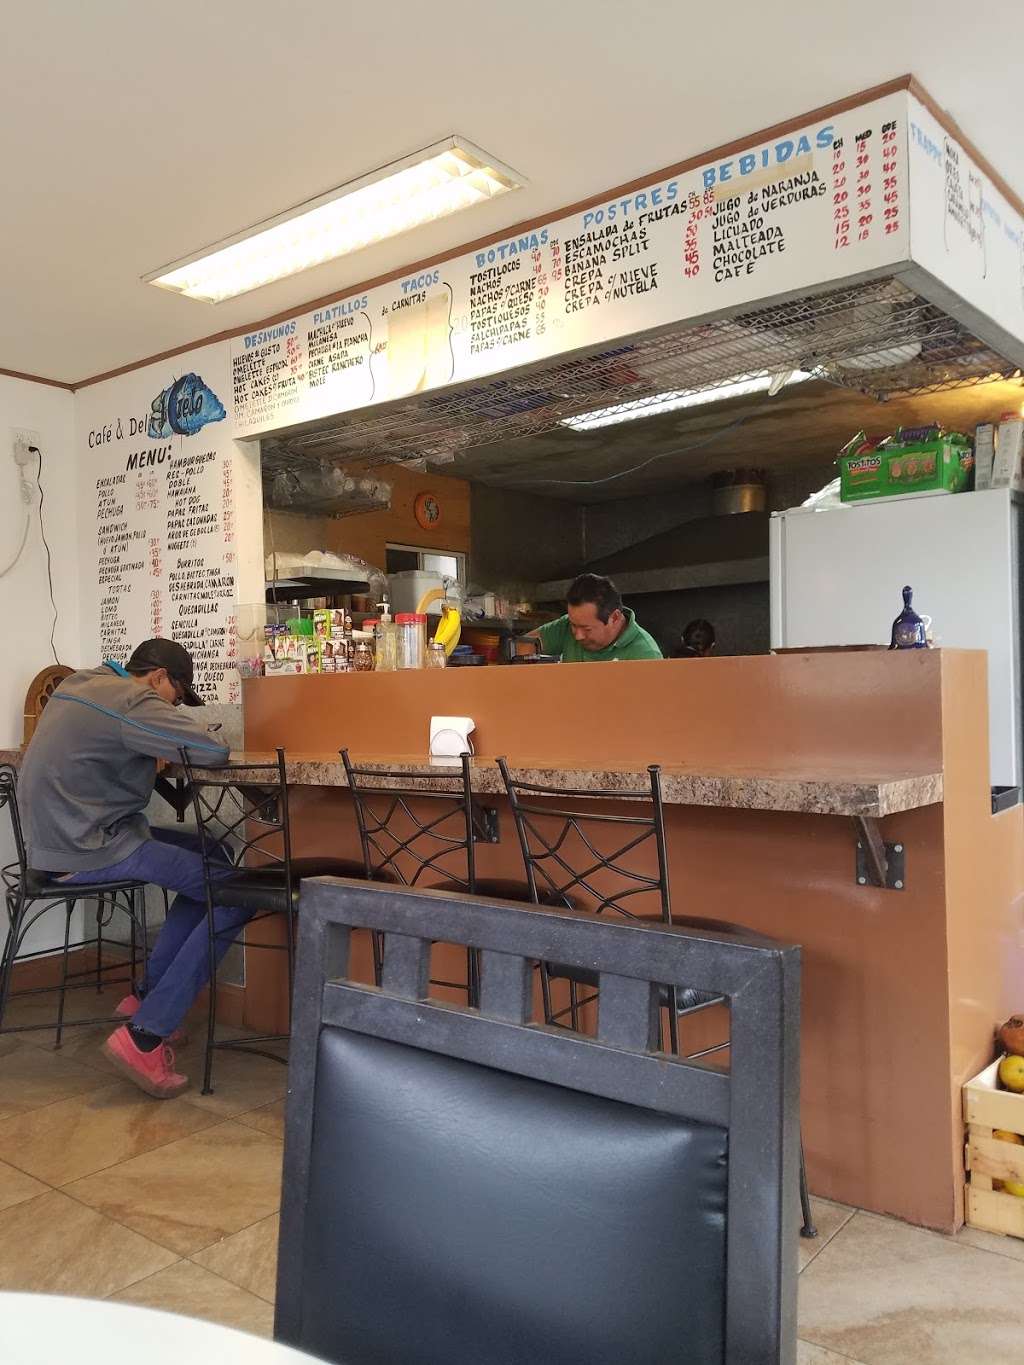 Café y delí "El Cielo" | Ramón Pereida 3677, Miramar, 22526 Tijuana, B.C., Mexico